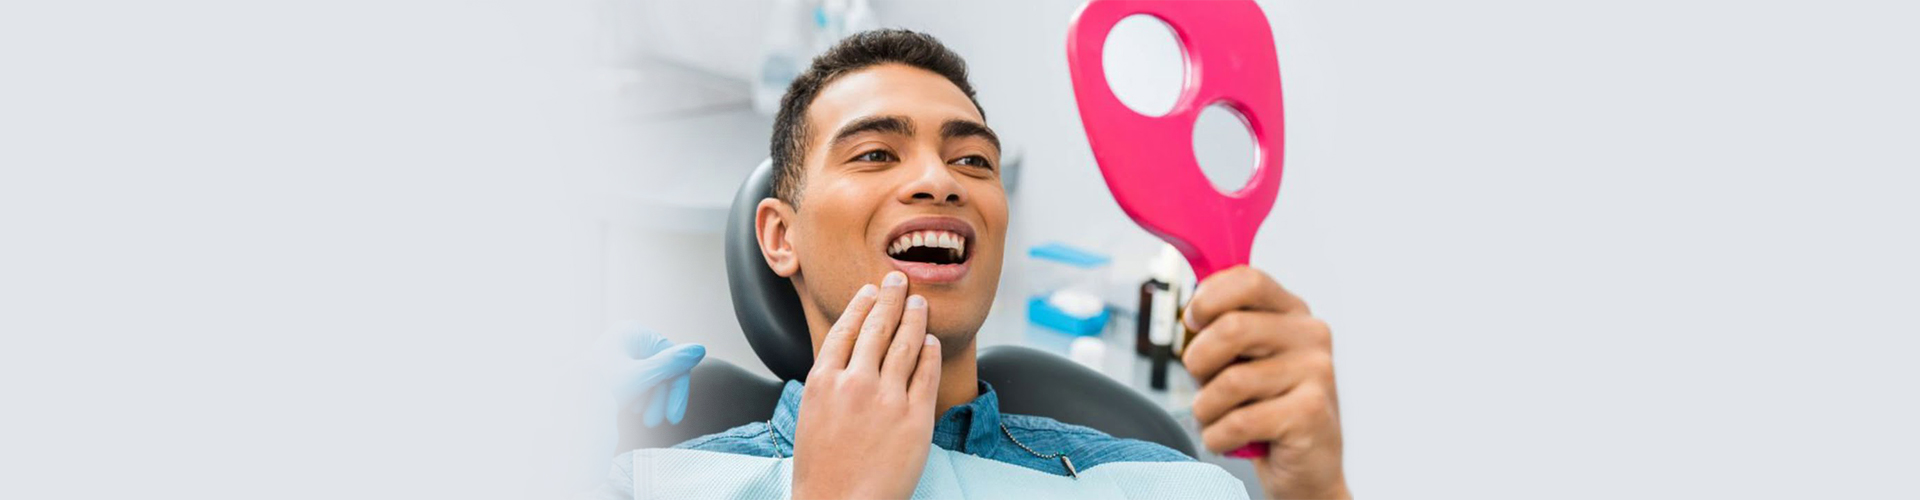 Dental Exams & Cleanings